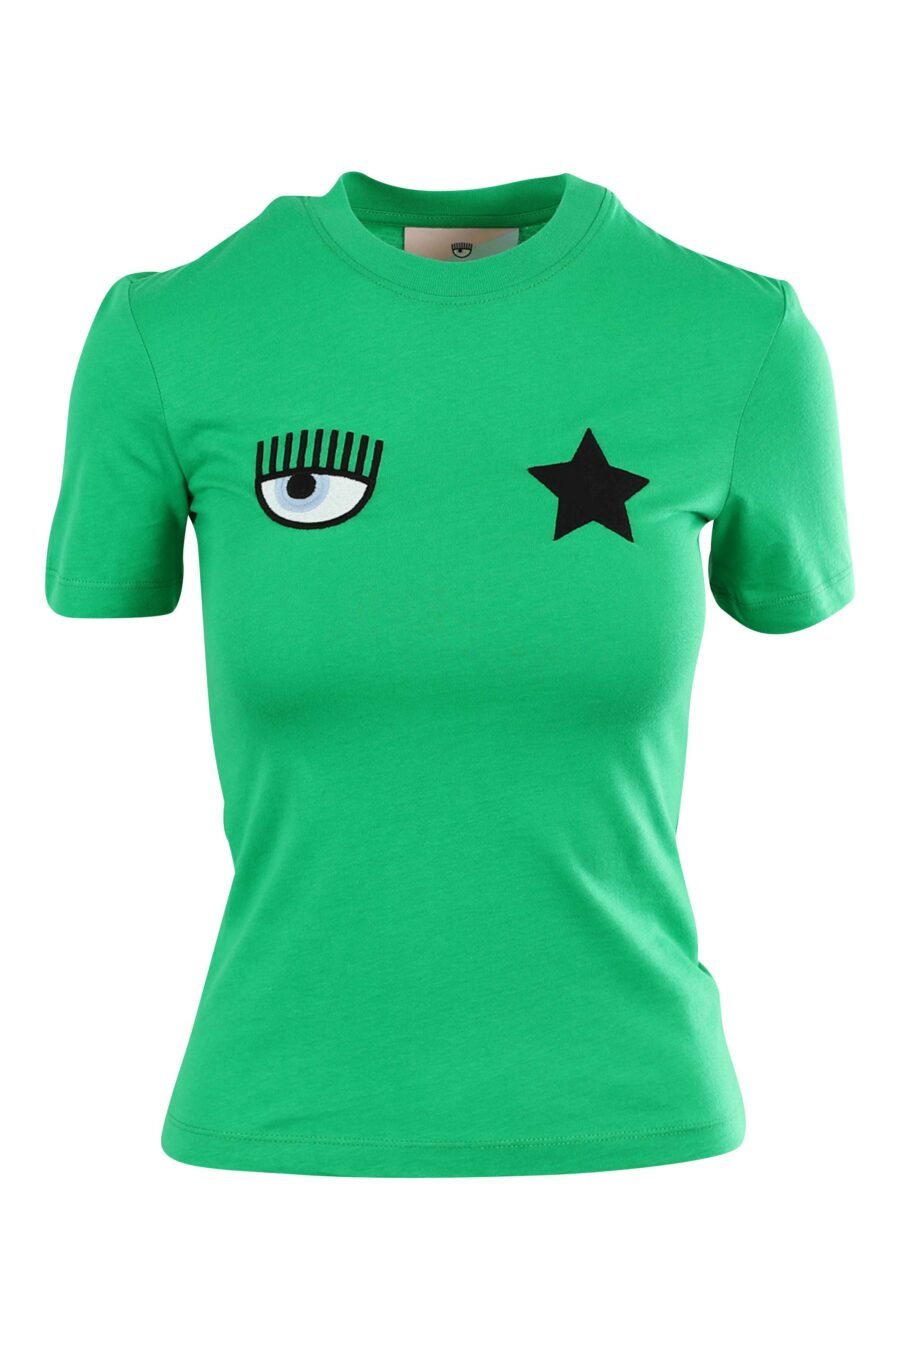 T-shirt verde clara com o logótipo do olho e da estrela - 8052672416780